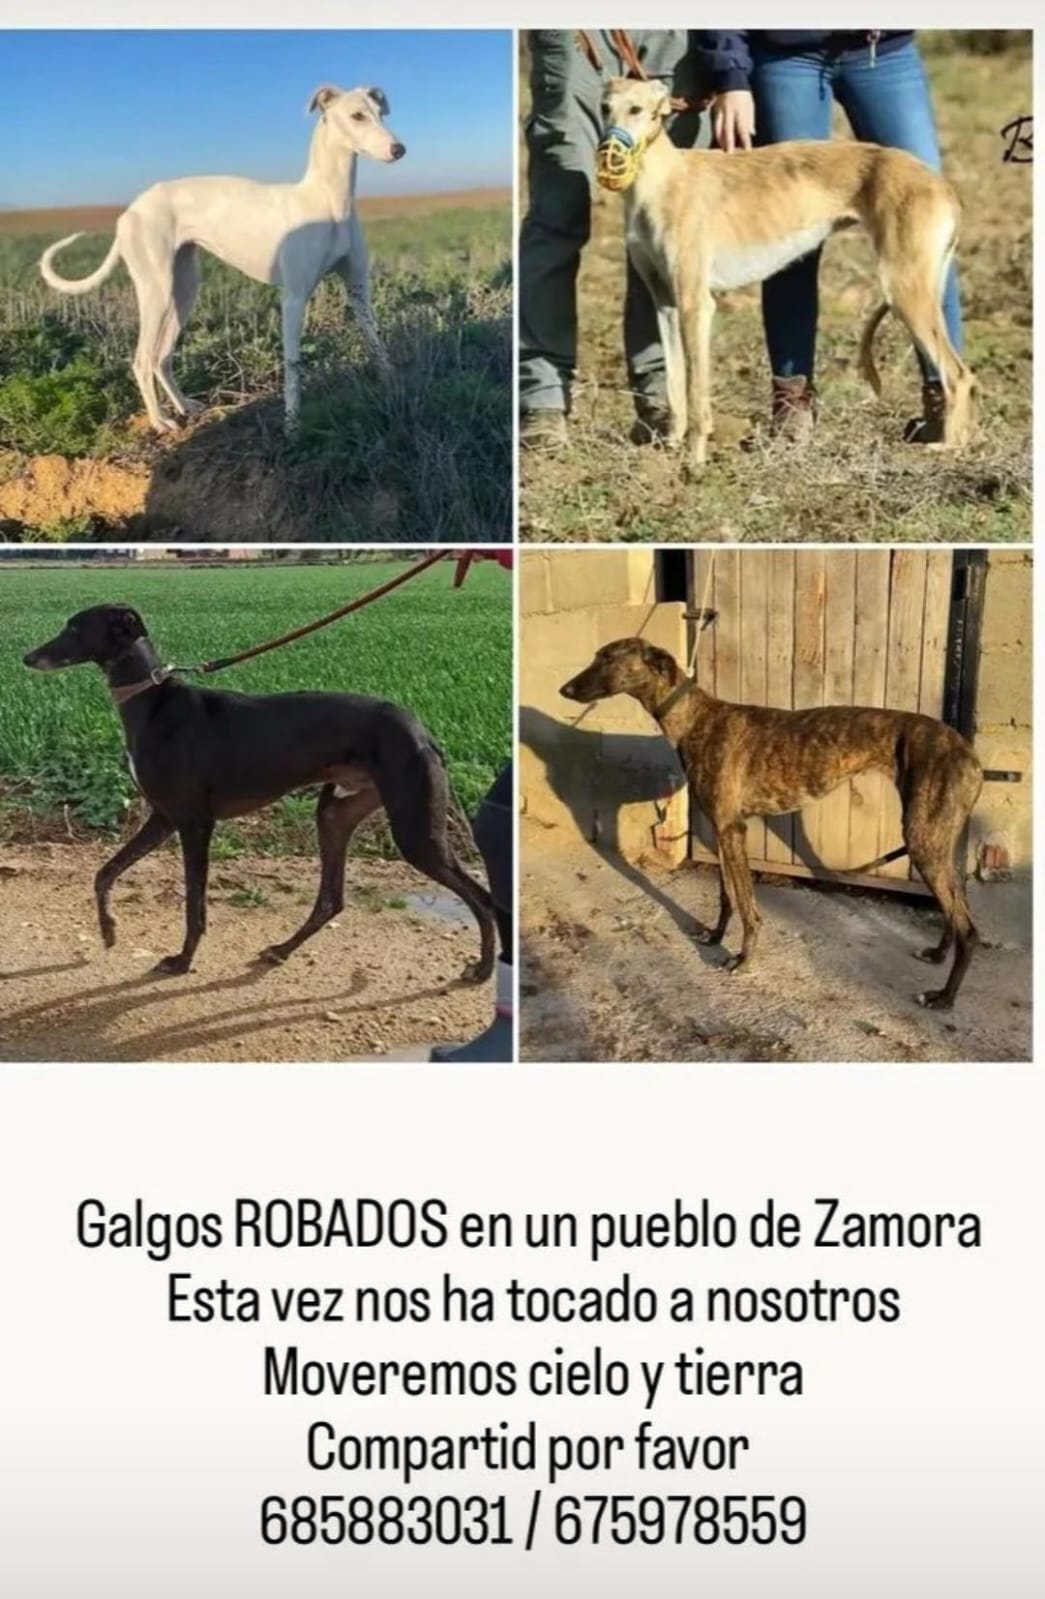 Galgos robados en Zamora